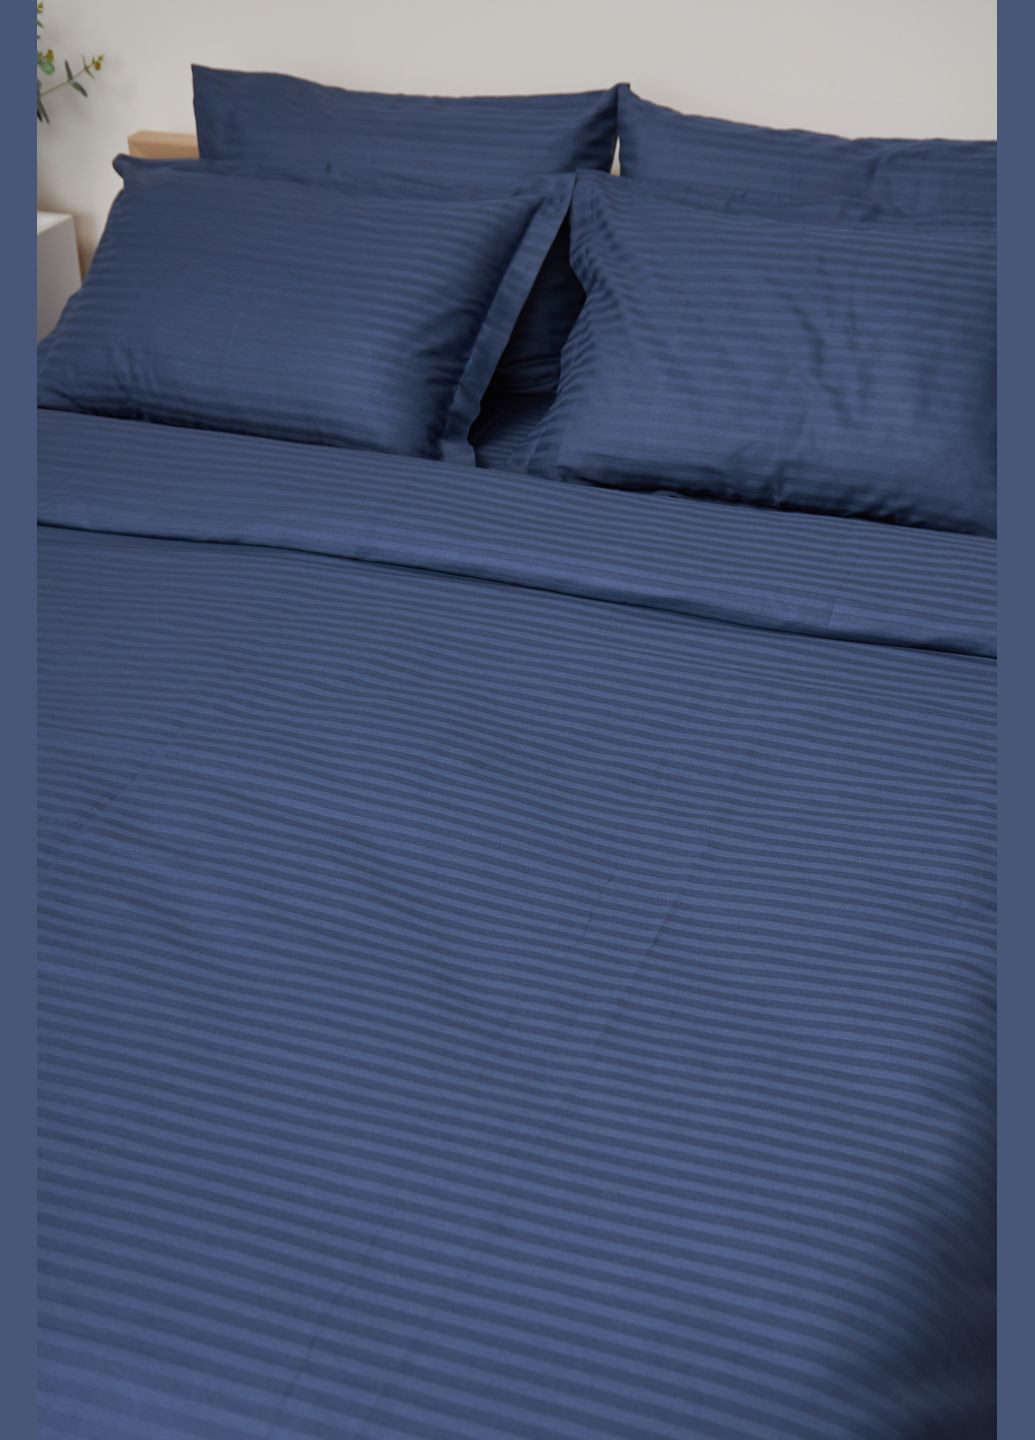 Комплект постельного белья евро 200х220 наволочки 4х50х70 Satin Stripe (MS-820000503) Moon&Star delfi blue (284416207)